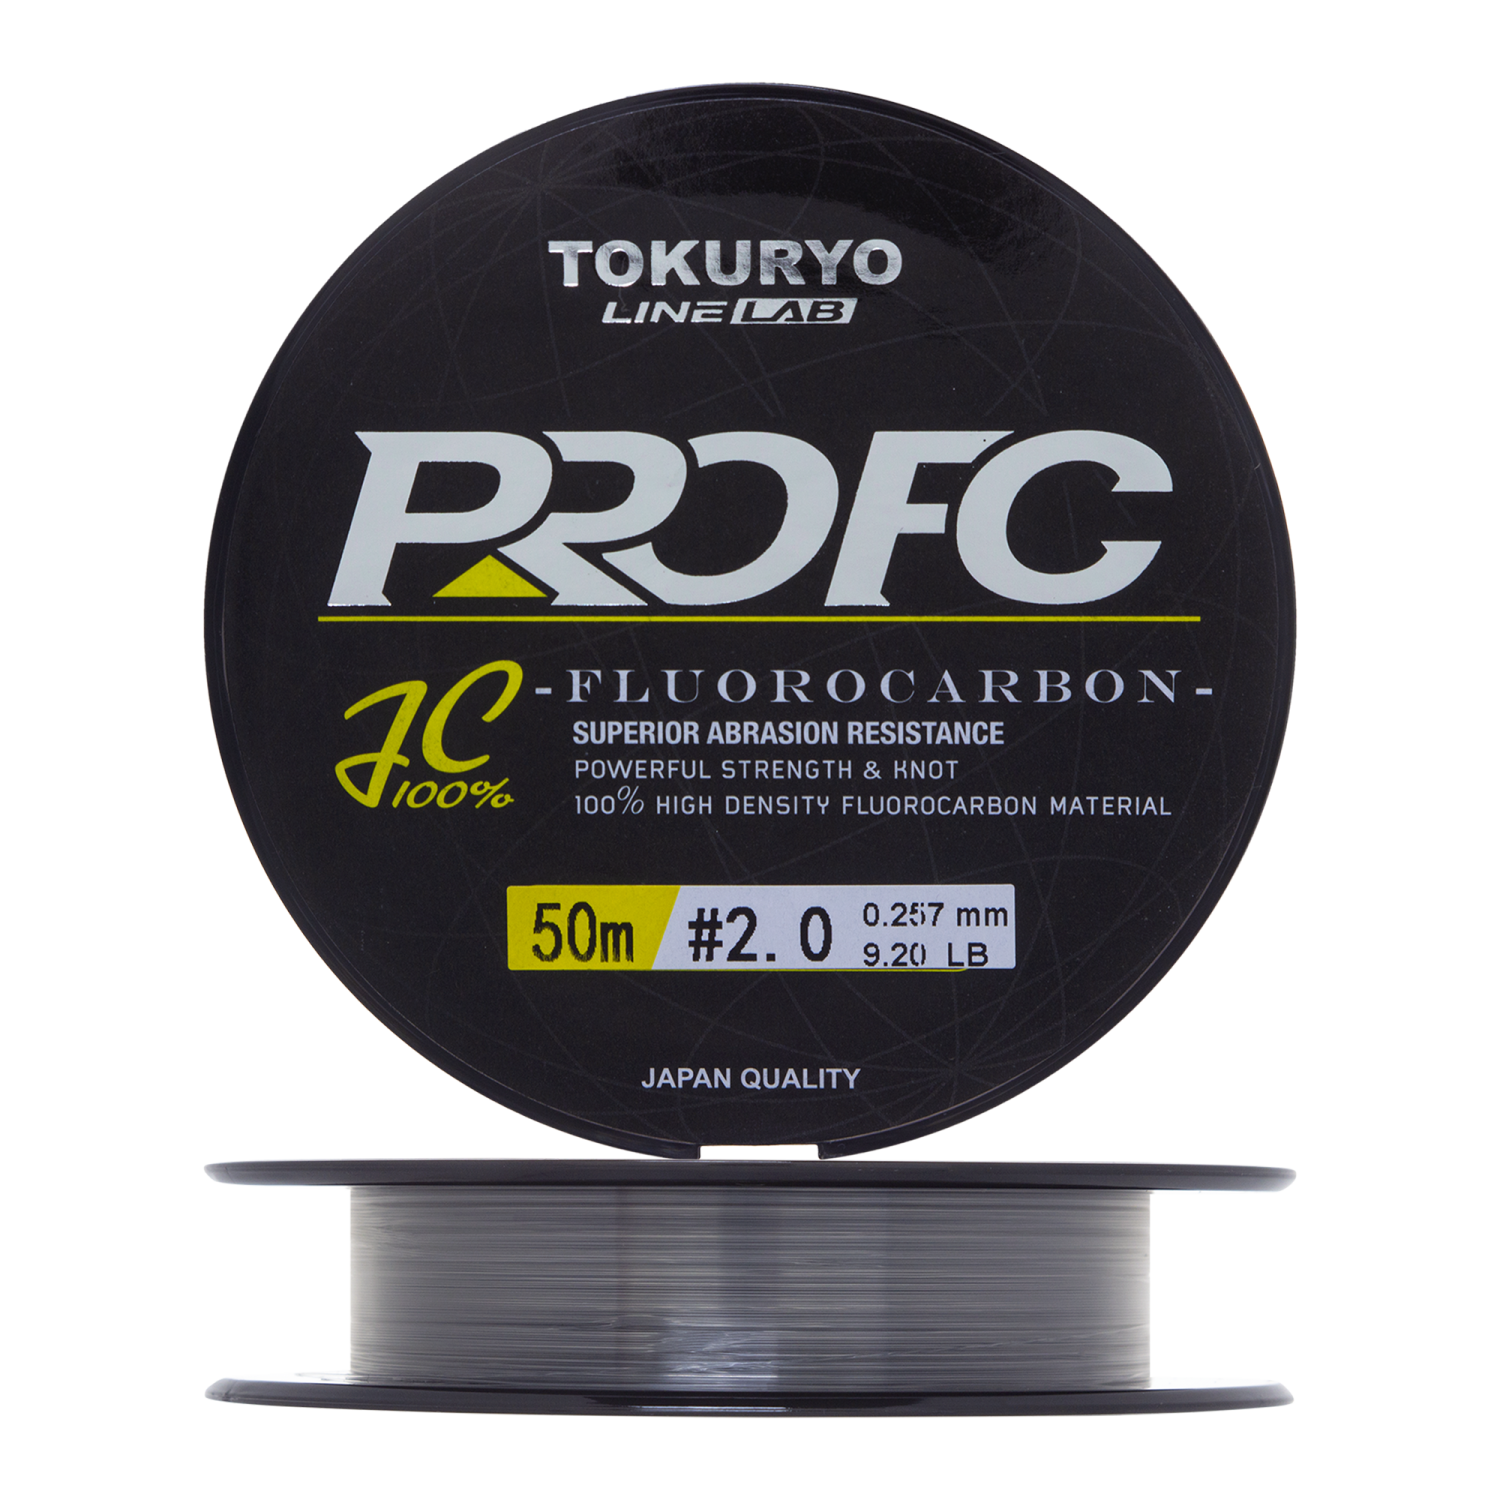 Флюорокарбон Tokuryo Fluorocarbon Pro FC #2 50м (clear)